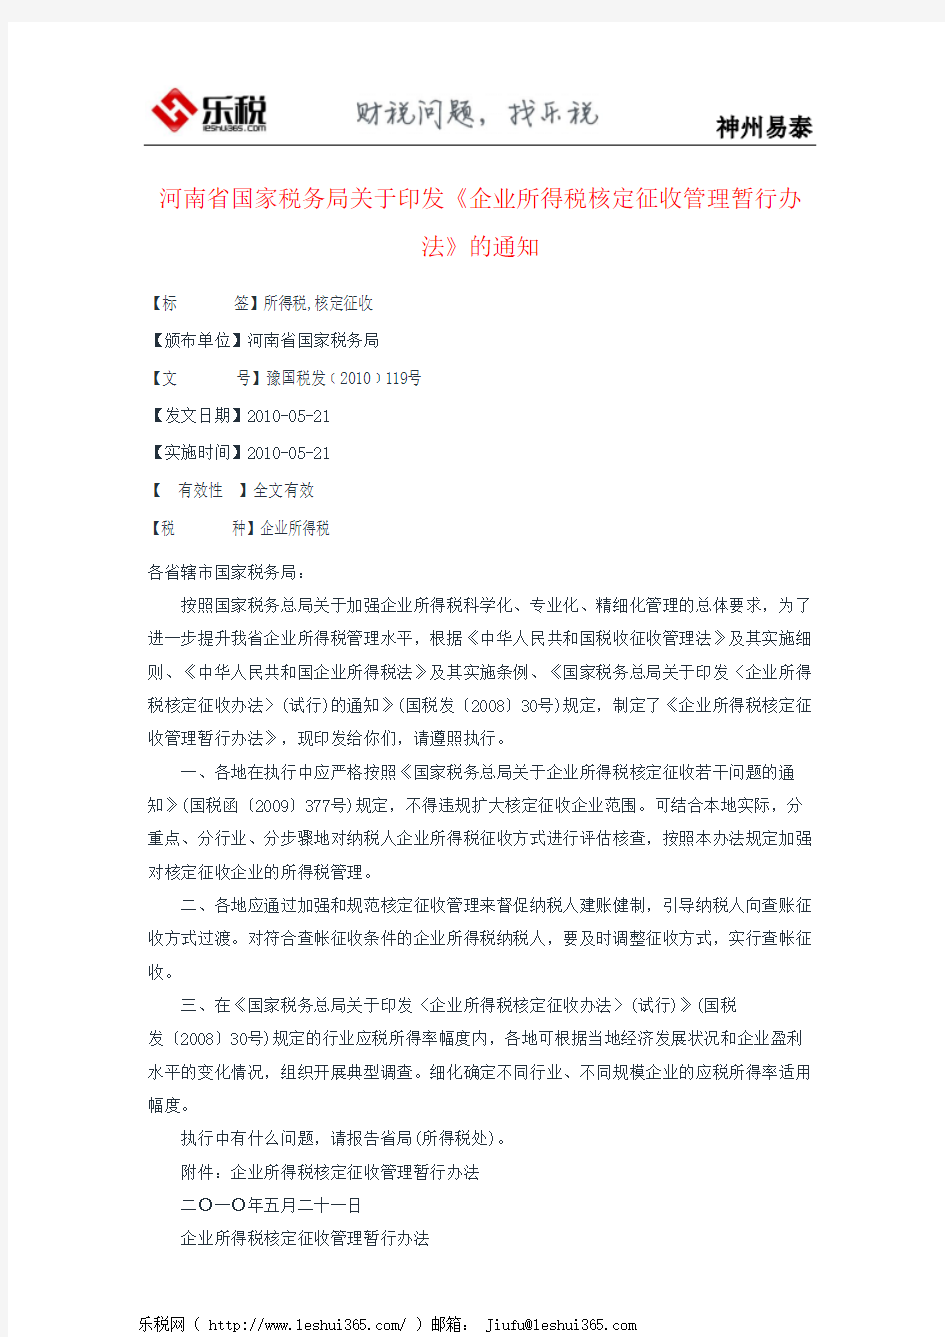 河南省国家税务局关于印发《企业所得税核定征收管理暂行办法》的通知